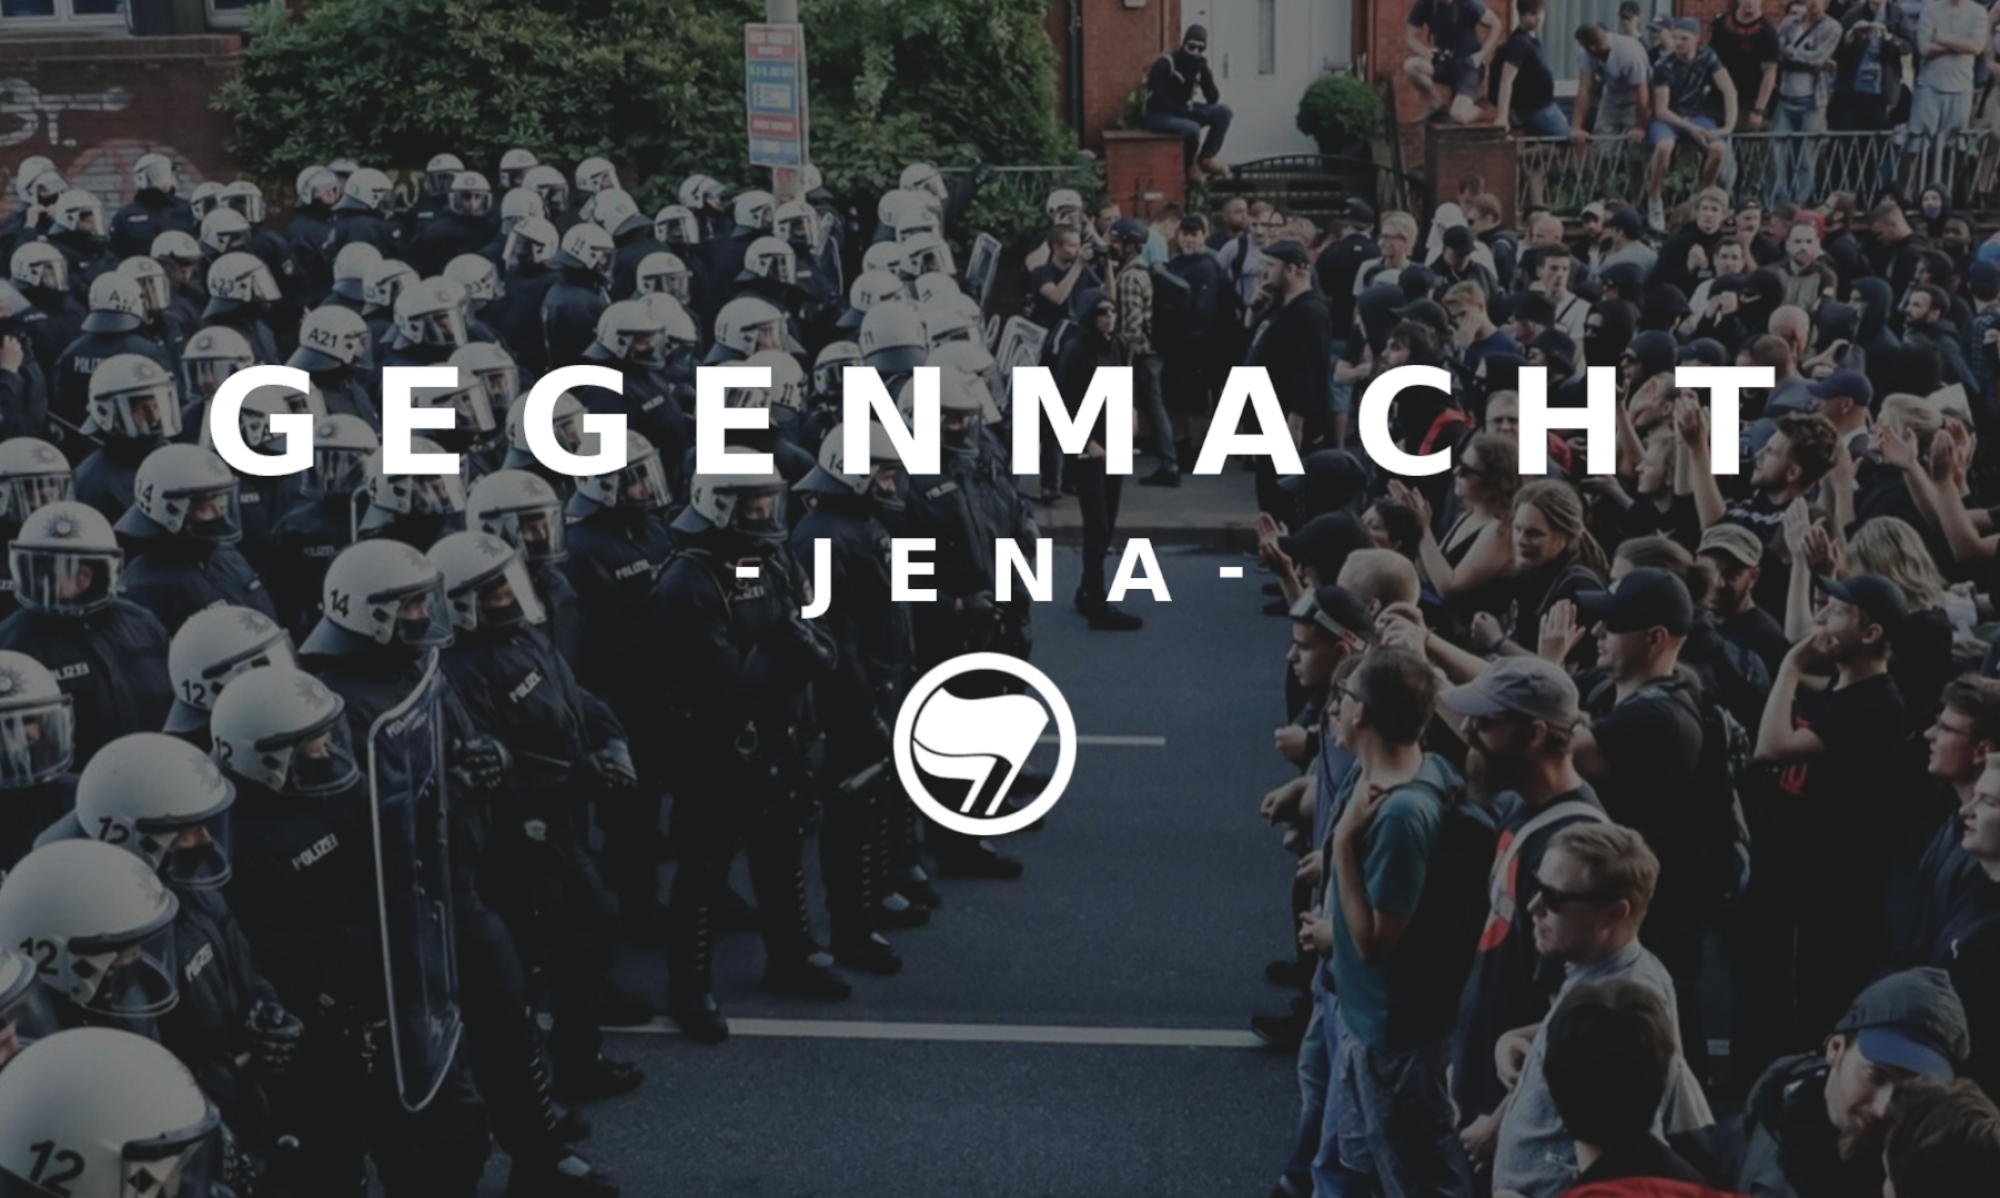 Gegenmacht Jena